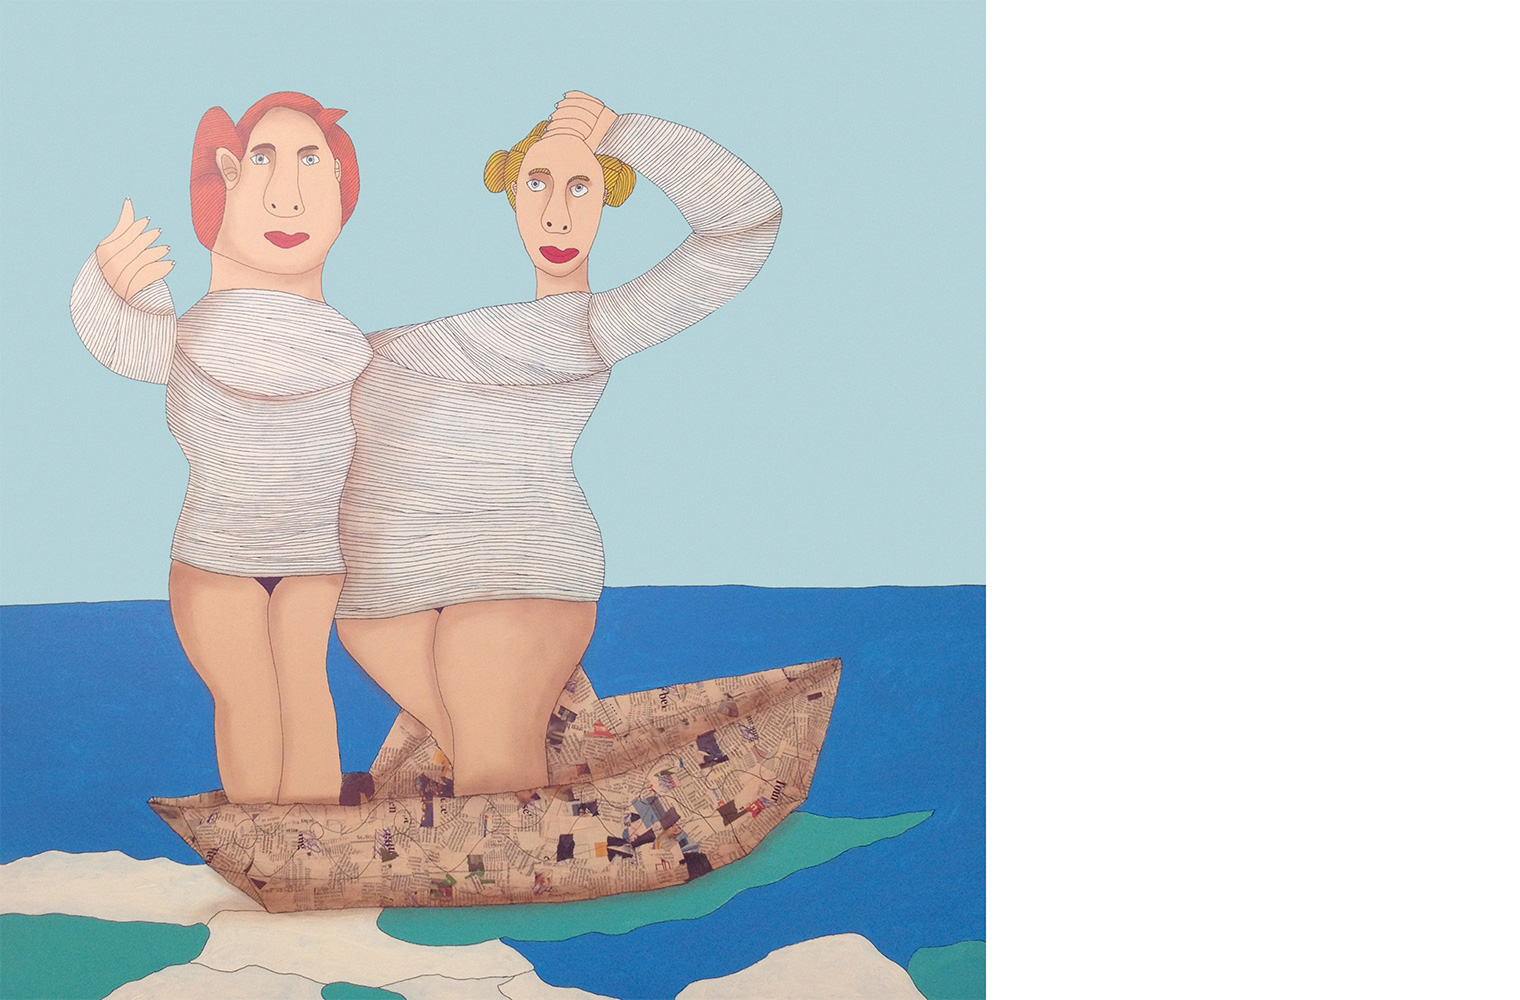 Ein gemaltes Bild: Eine Frau mit roten Haaren und eine blonde Frau auf der rechten Seite. Sie beide haben eine graues enges Kleid an. Die Beine sind frei. Sie stehen auf einem Boot im Ozean. Das Meer ist blau und der Himmel hellblau. 